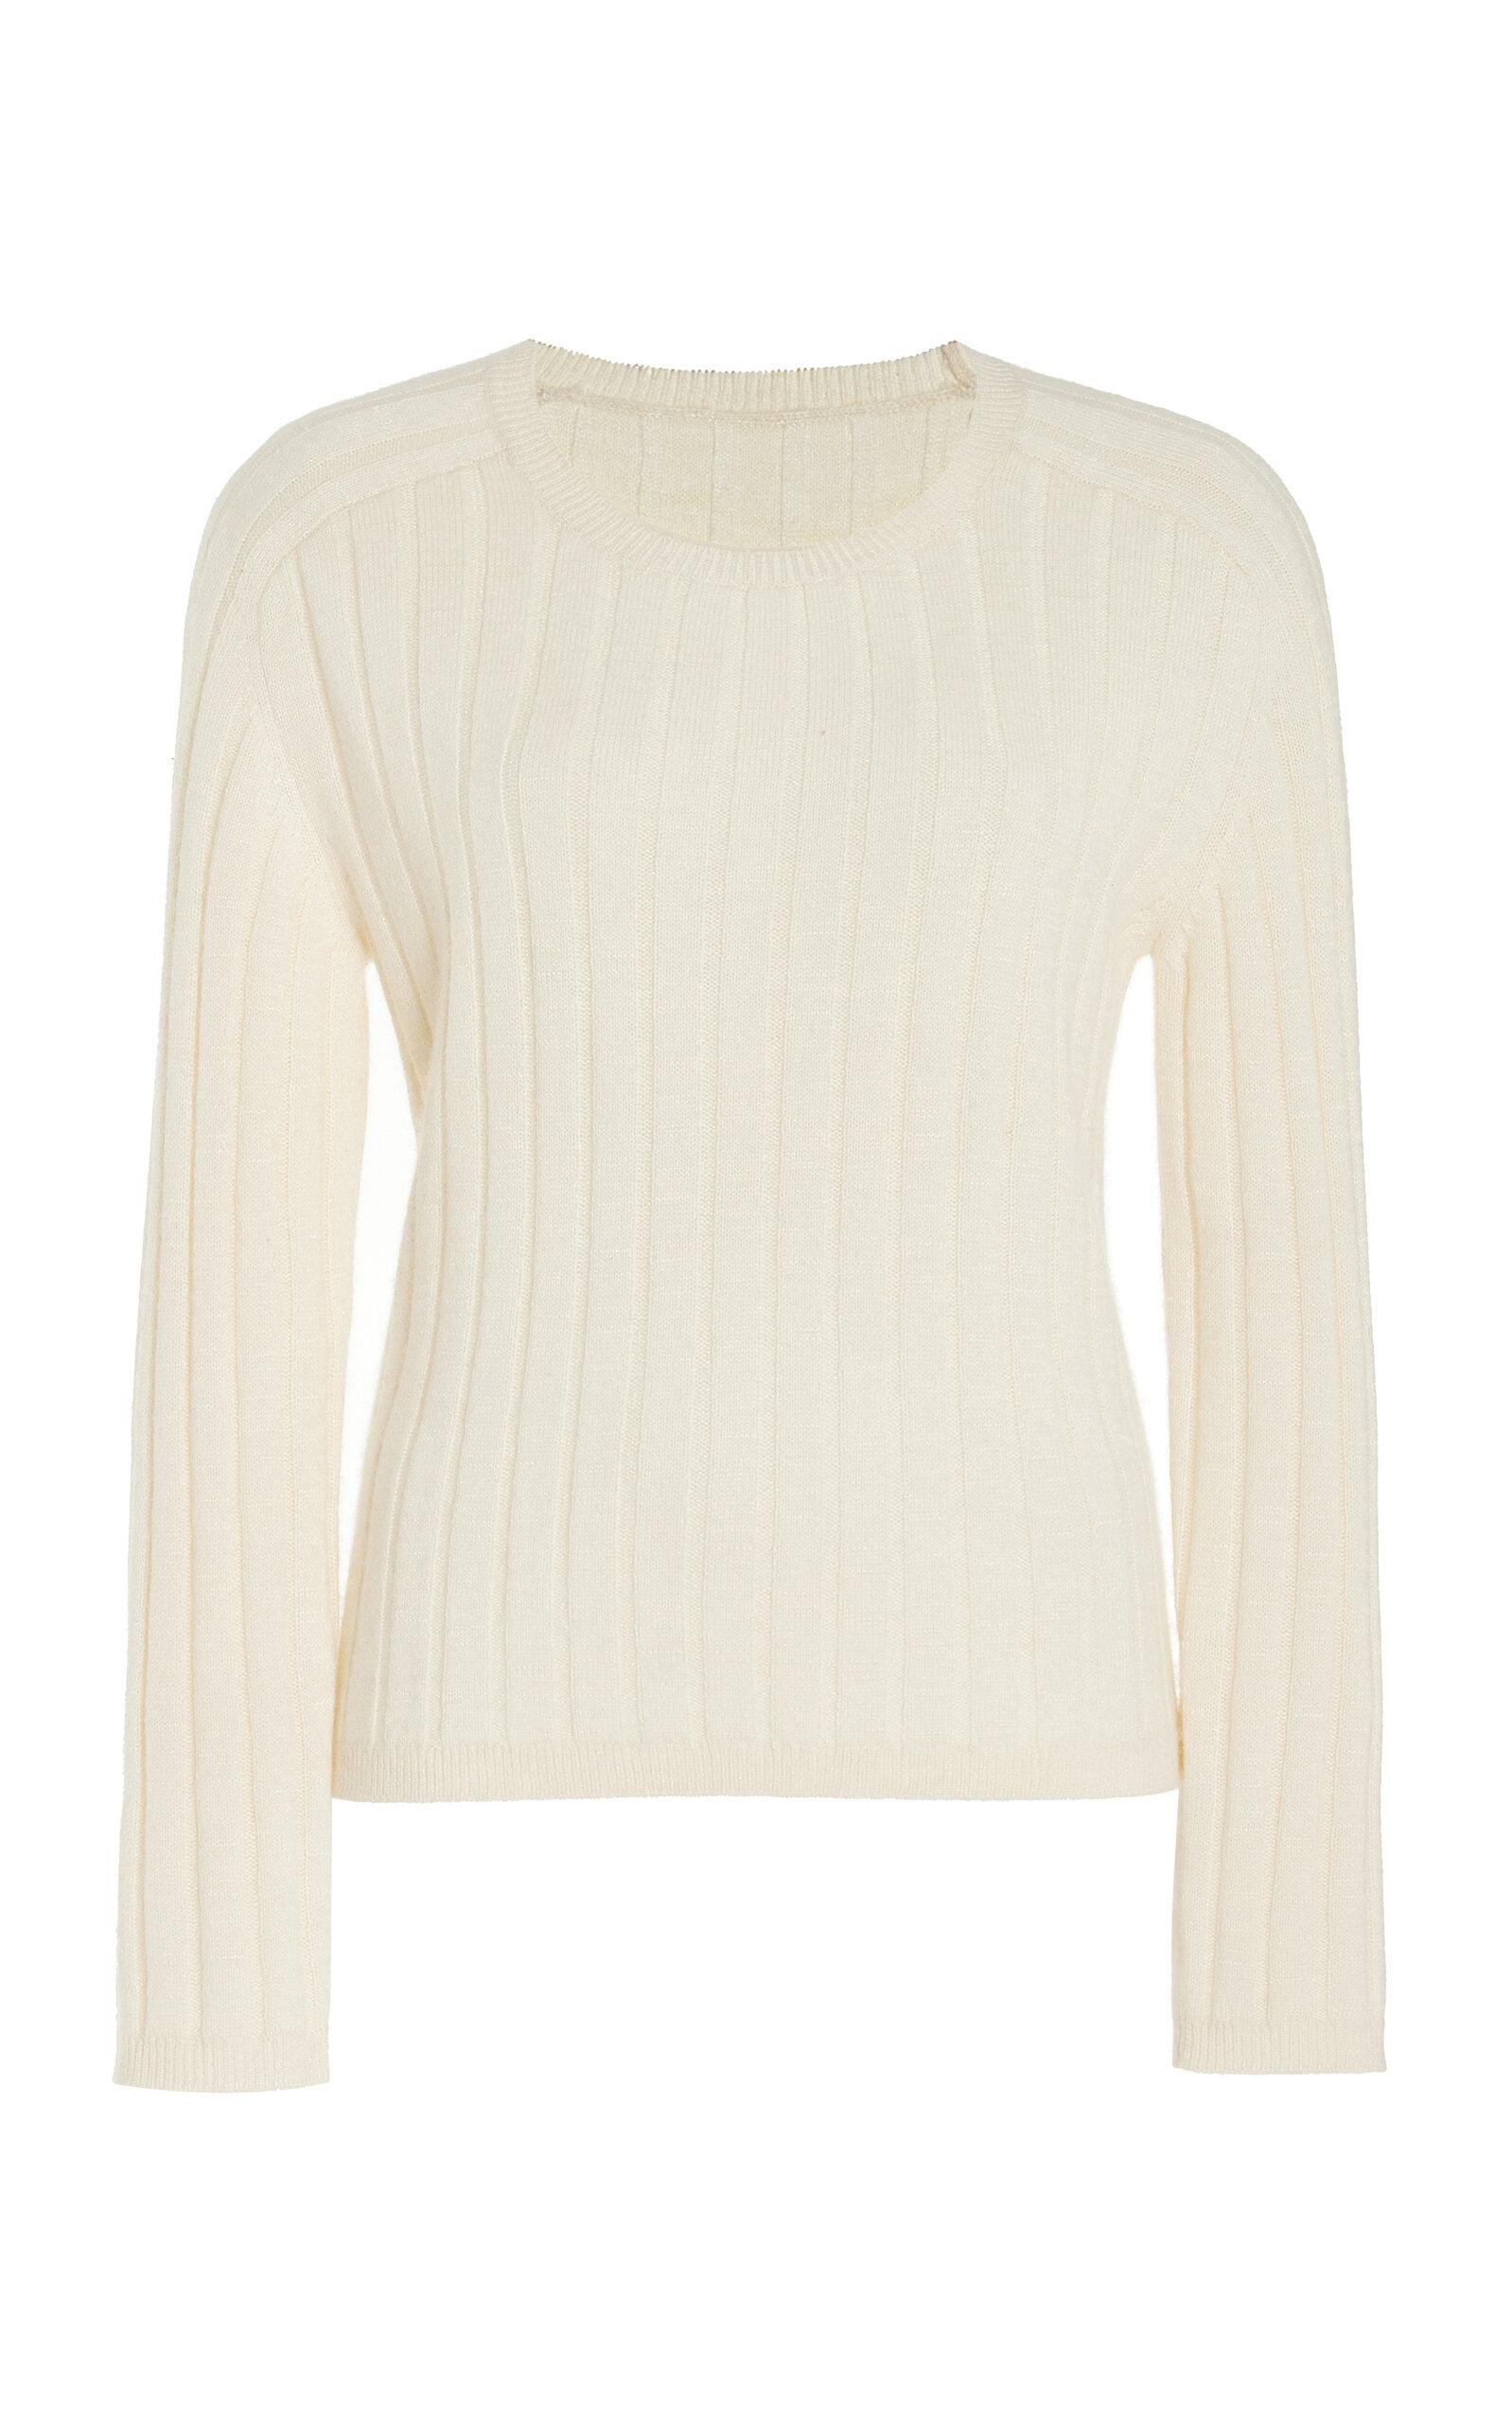 NILI LOTAN - Alise Silk Sweater - Ivory - XS - Moda Operandi by NILI LOTAN